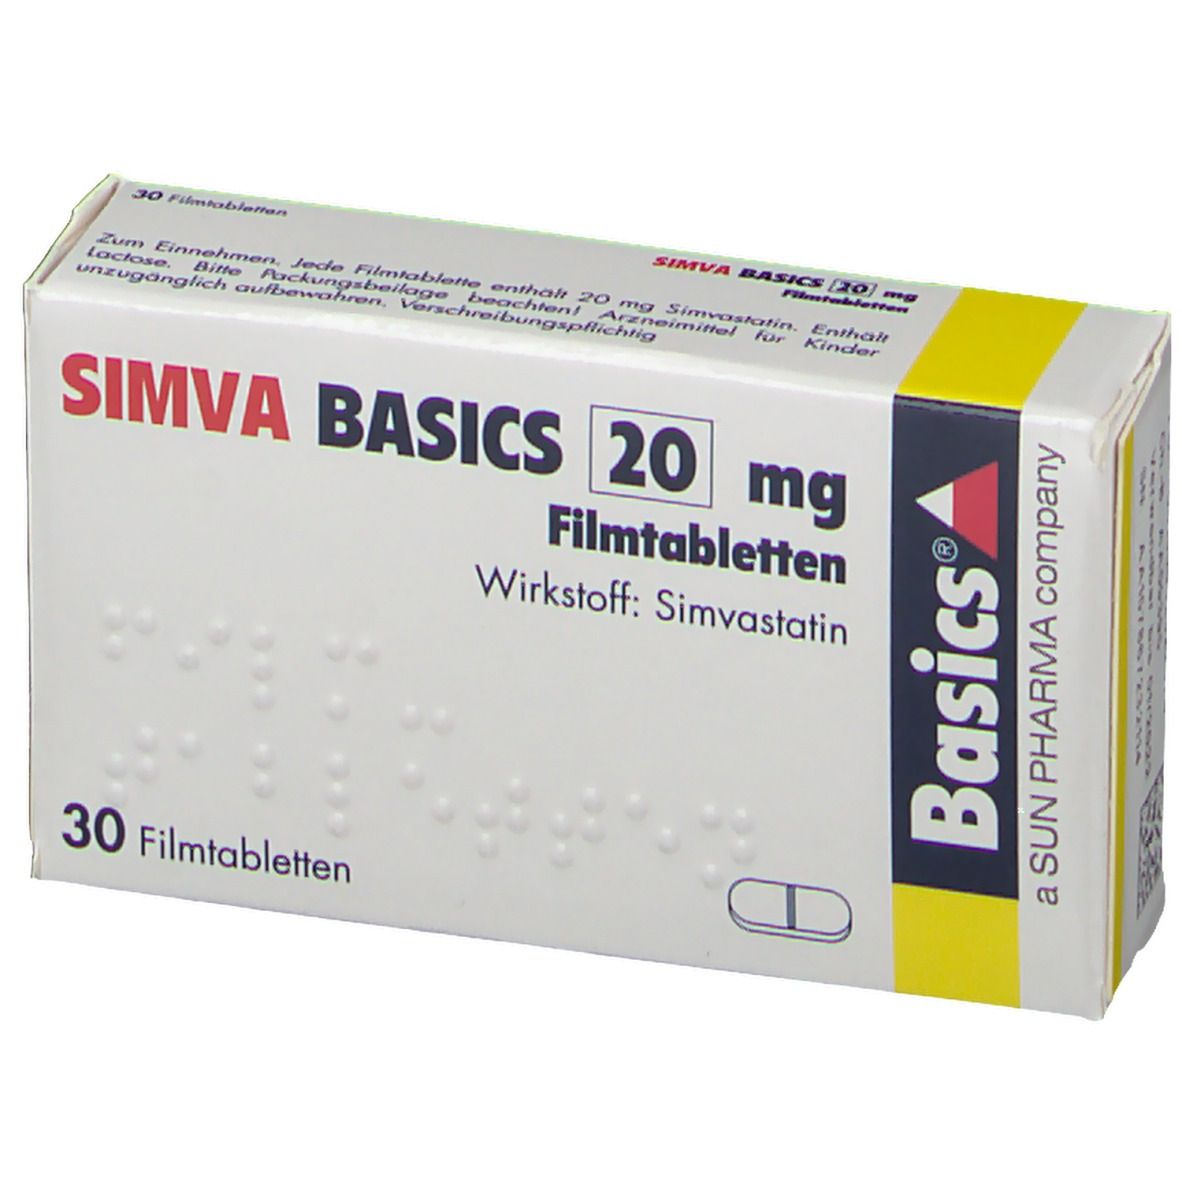 SIMVA BASICS 20 mg